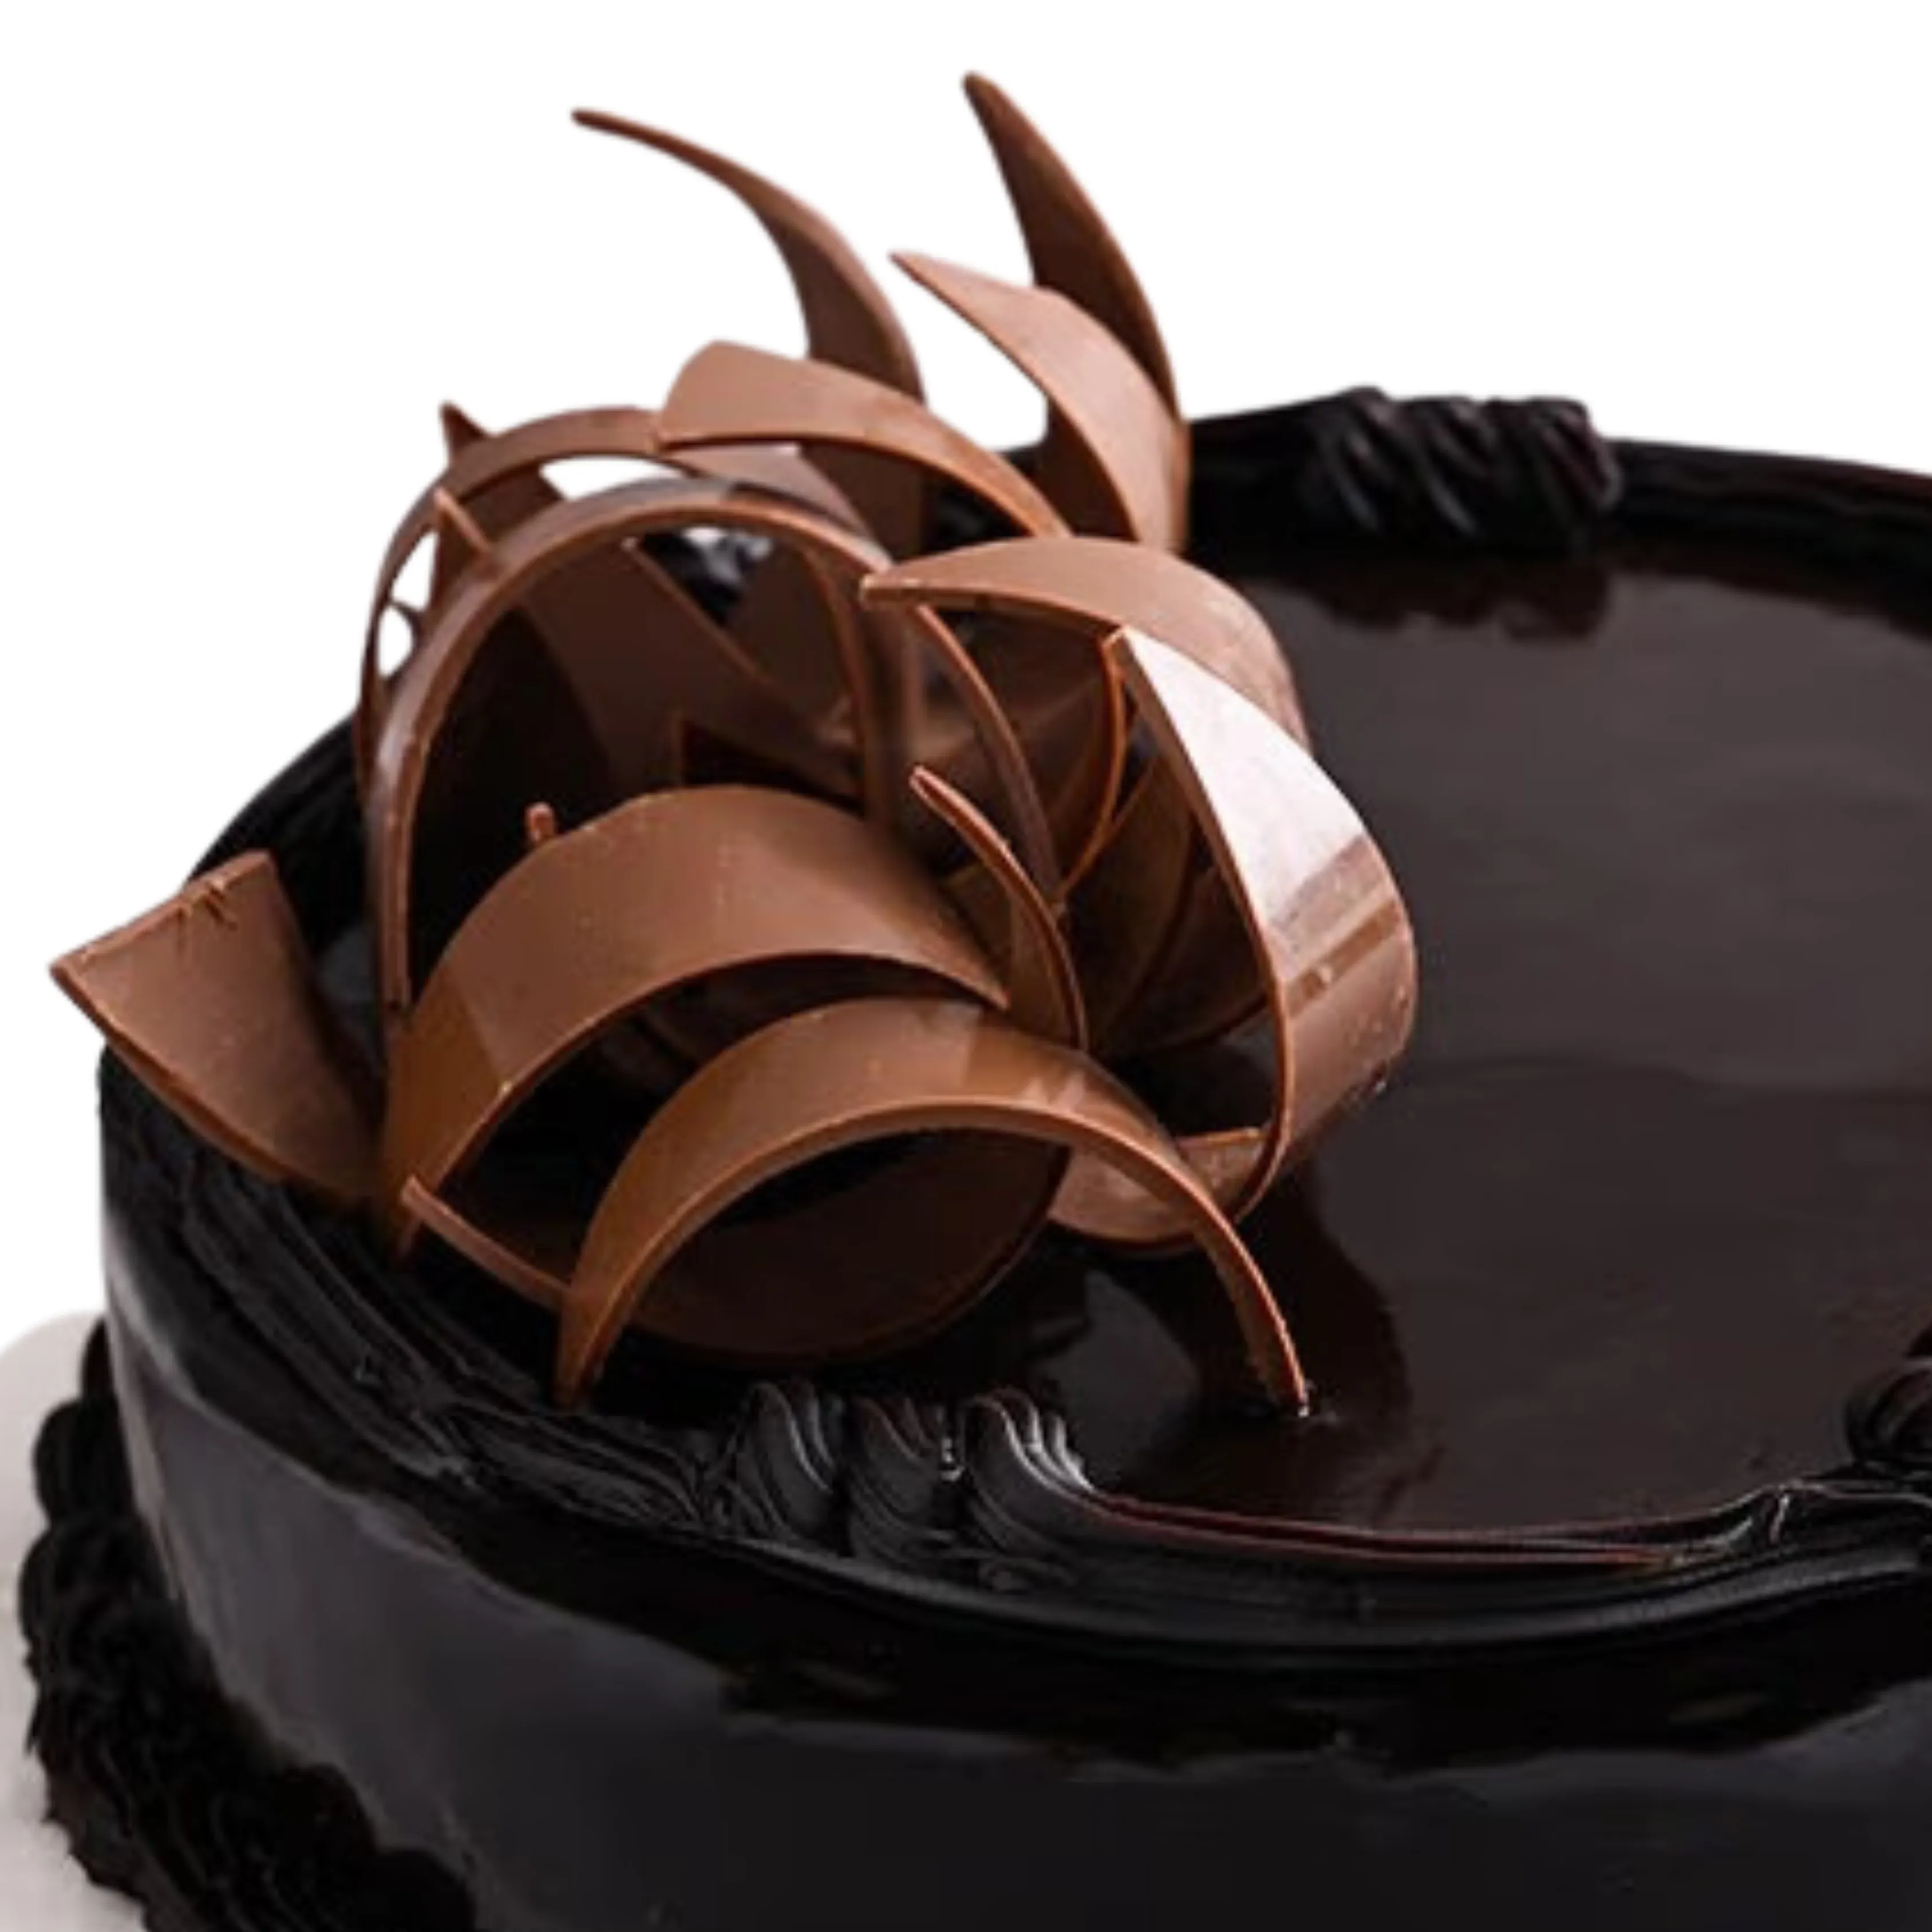 Round Chocolate Truffle Glaze Cake for Anniversary